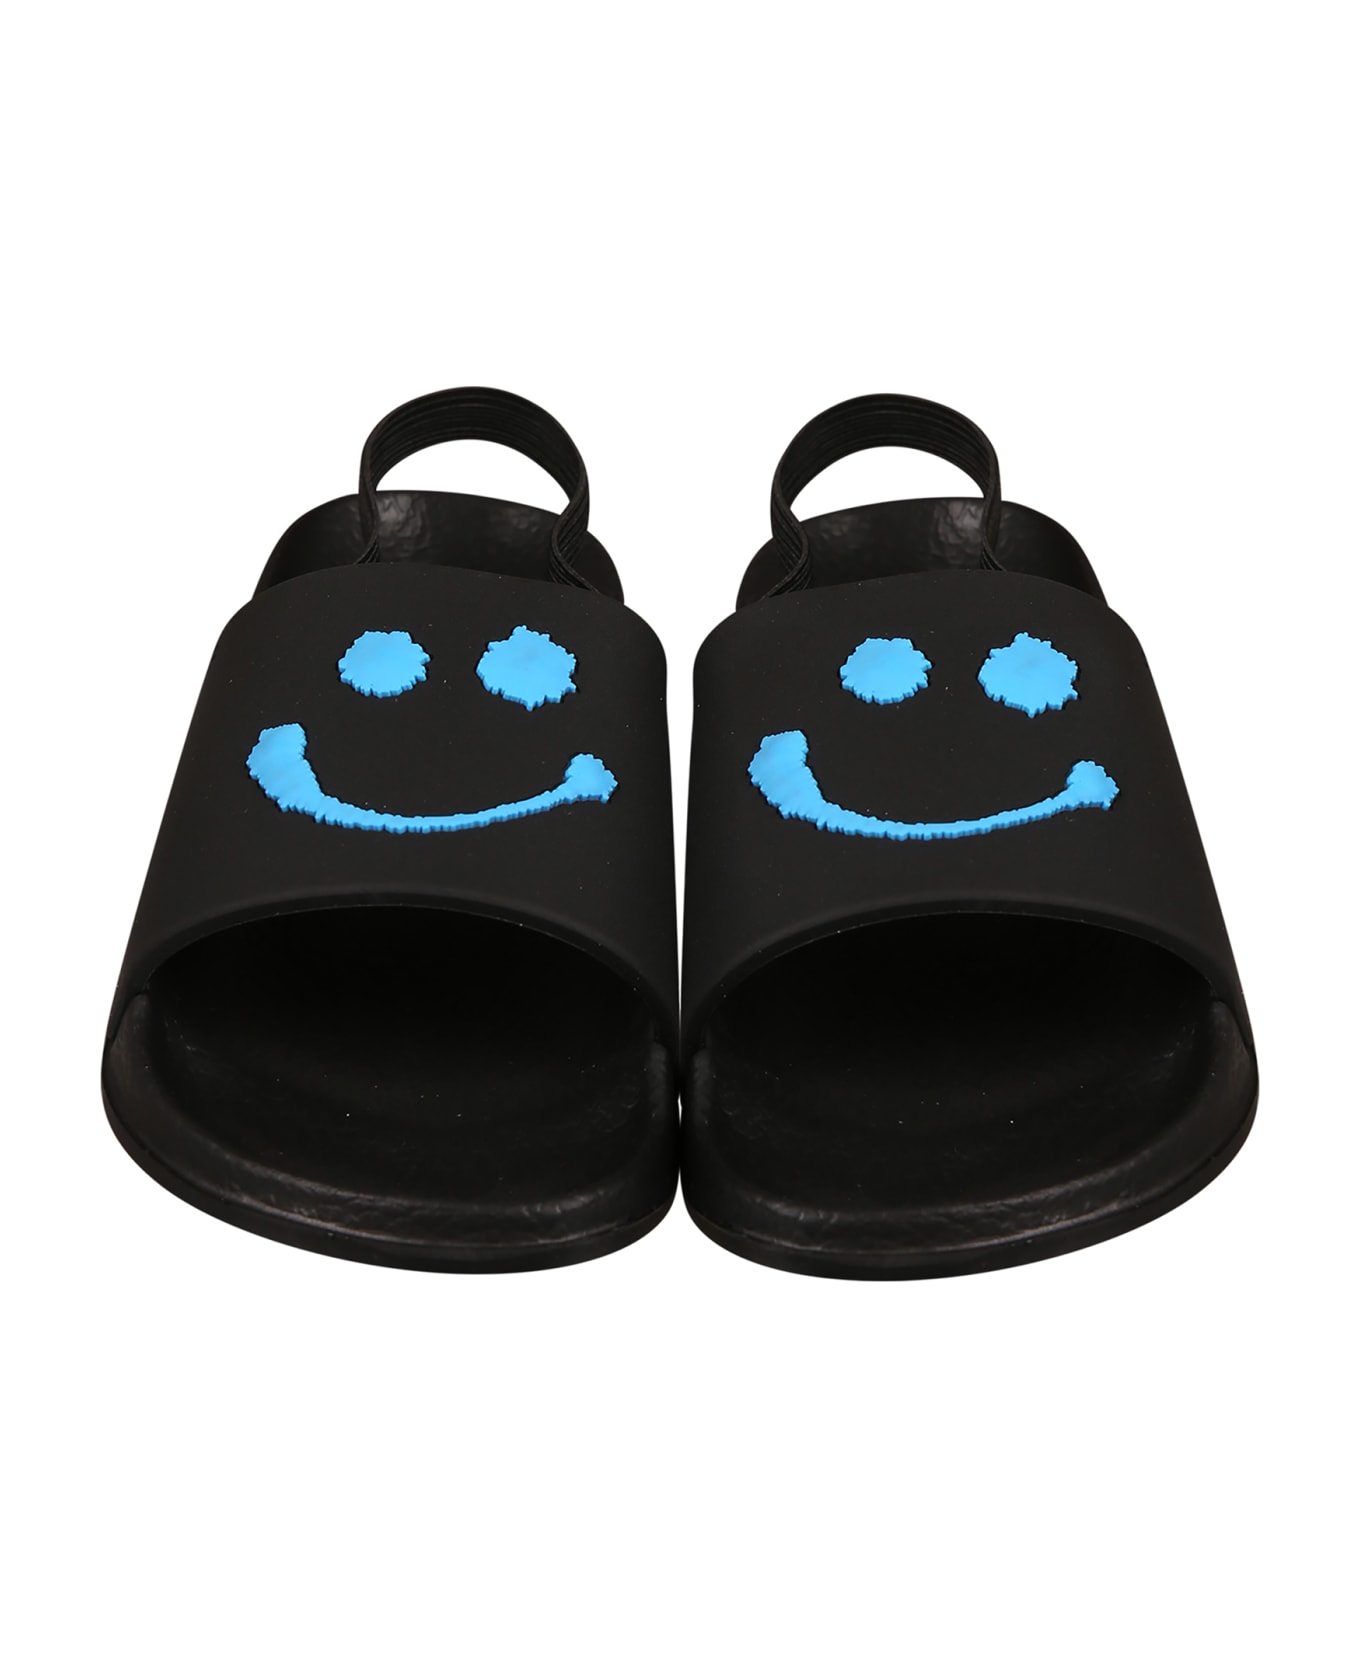 Molo Sandales Noires Pour Garçon Avec Smiley - Black